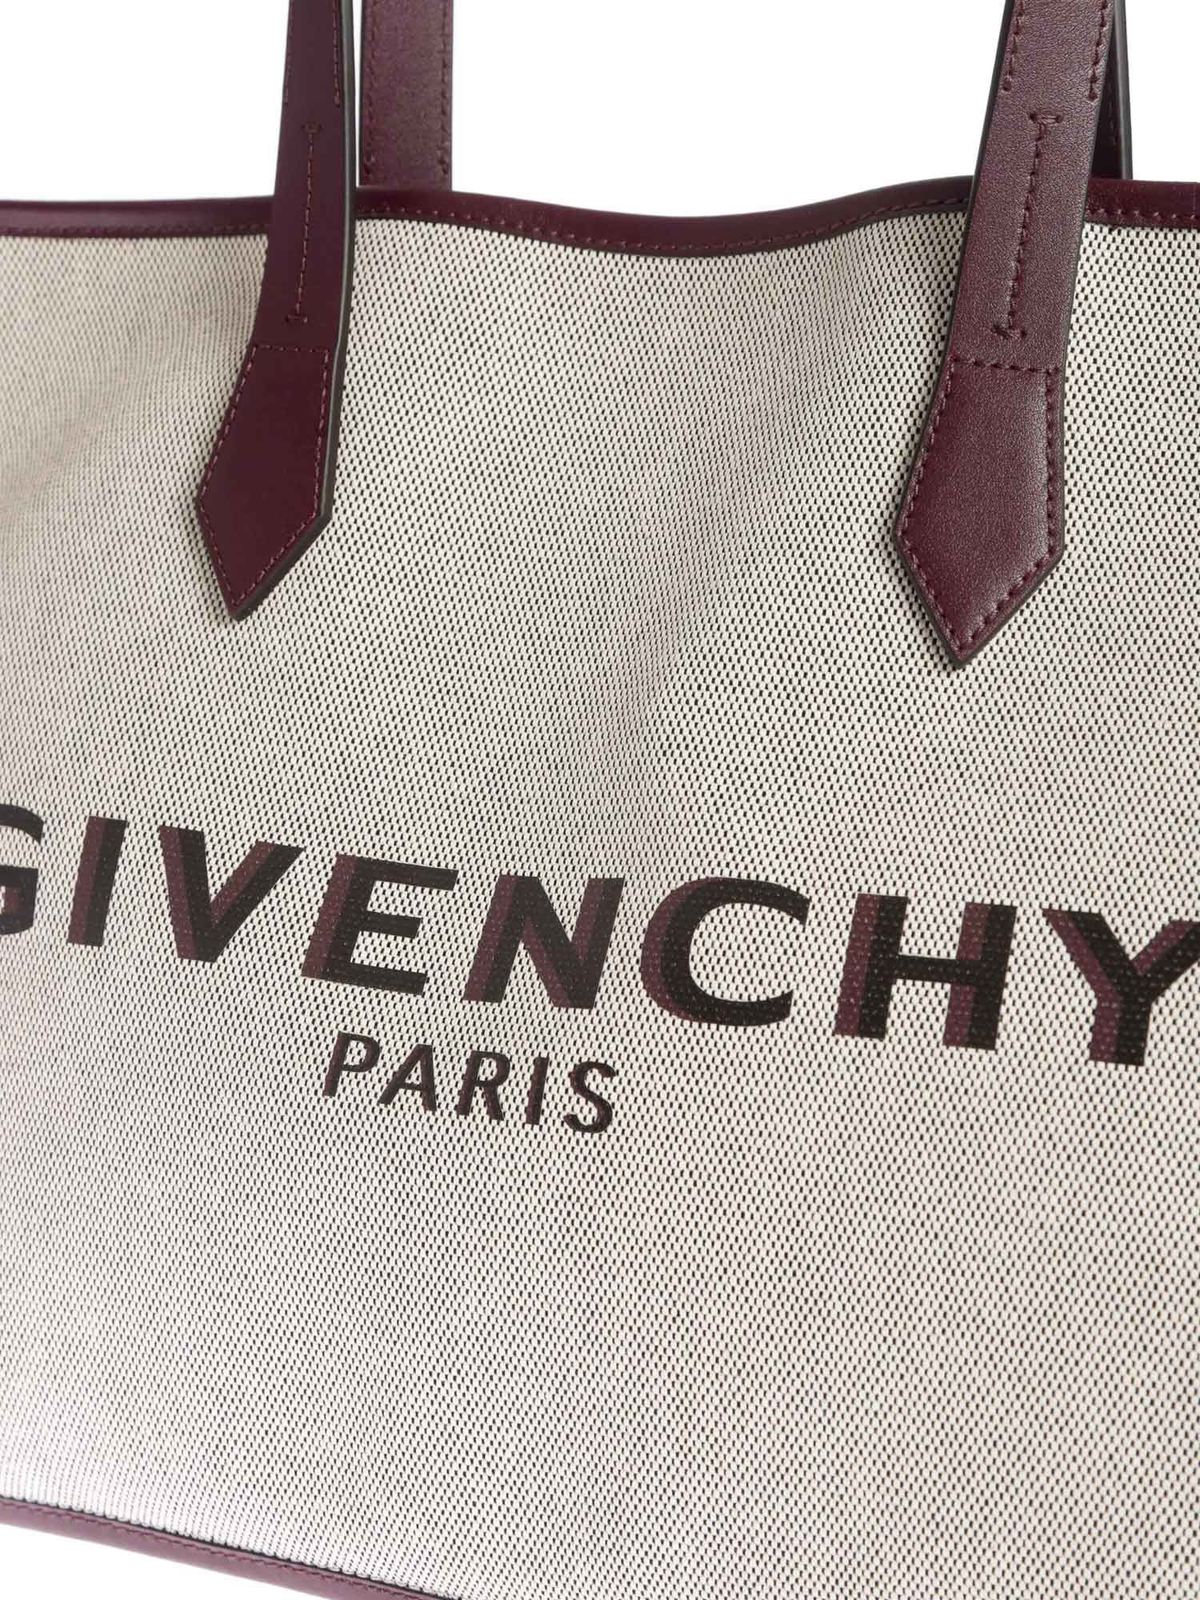 Givenchy Medium Tote Bag in Grey